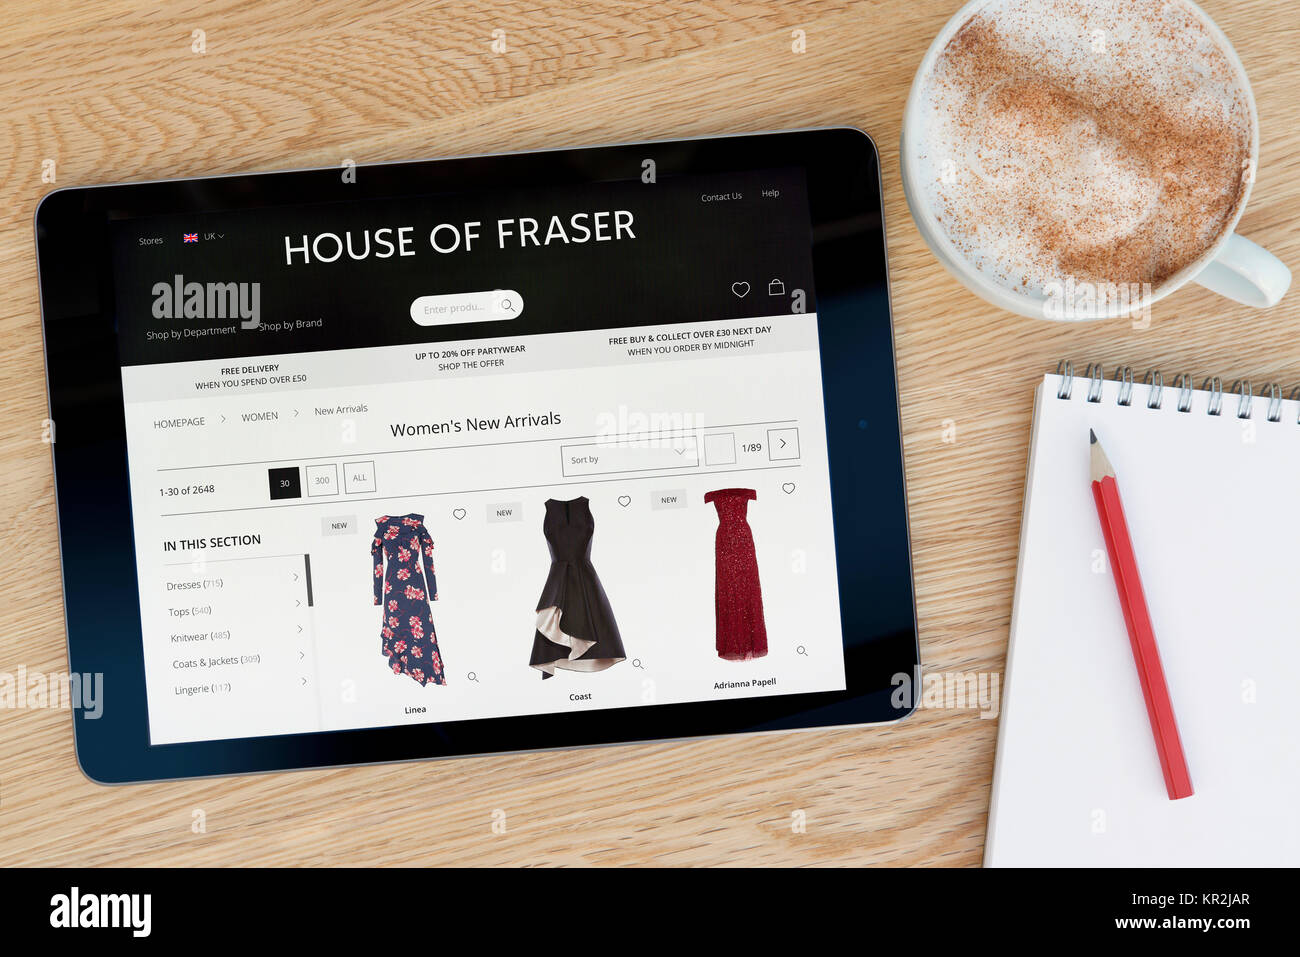 La House of Fraser Site sur un iPad tablet device qui repose sur une table en bois à côté d'un bloc-notes et un crayon et une tasse de café (rédaction uniquement) Banque D'Images